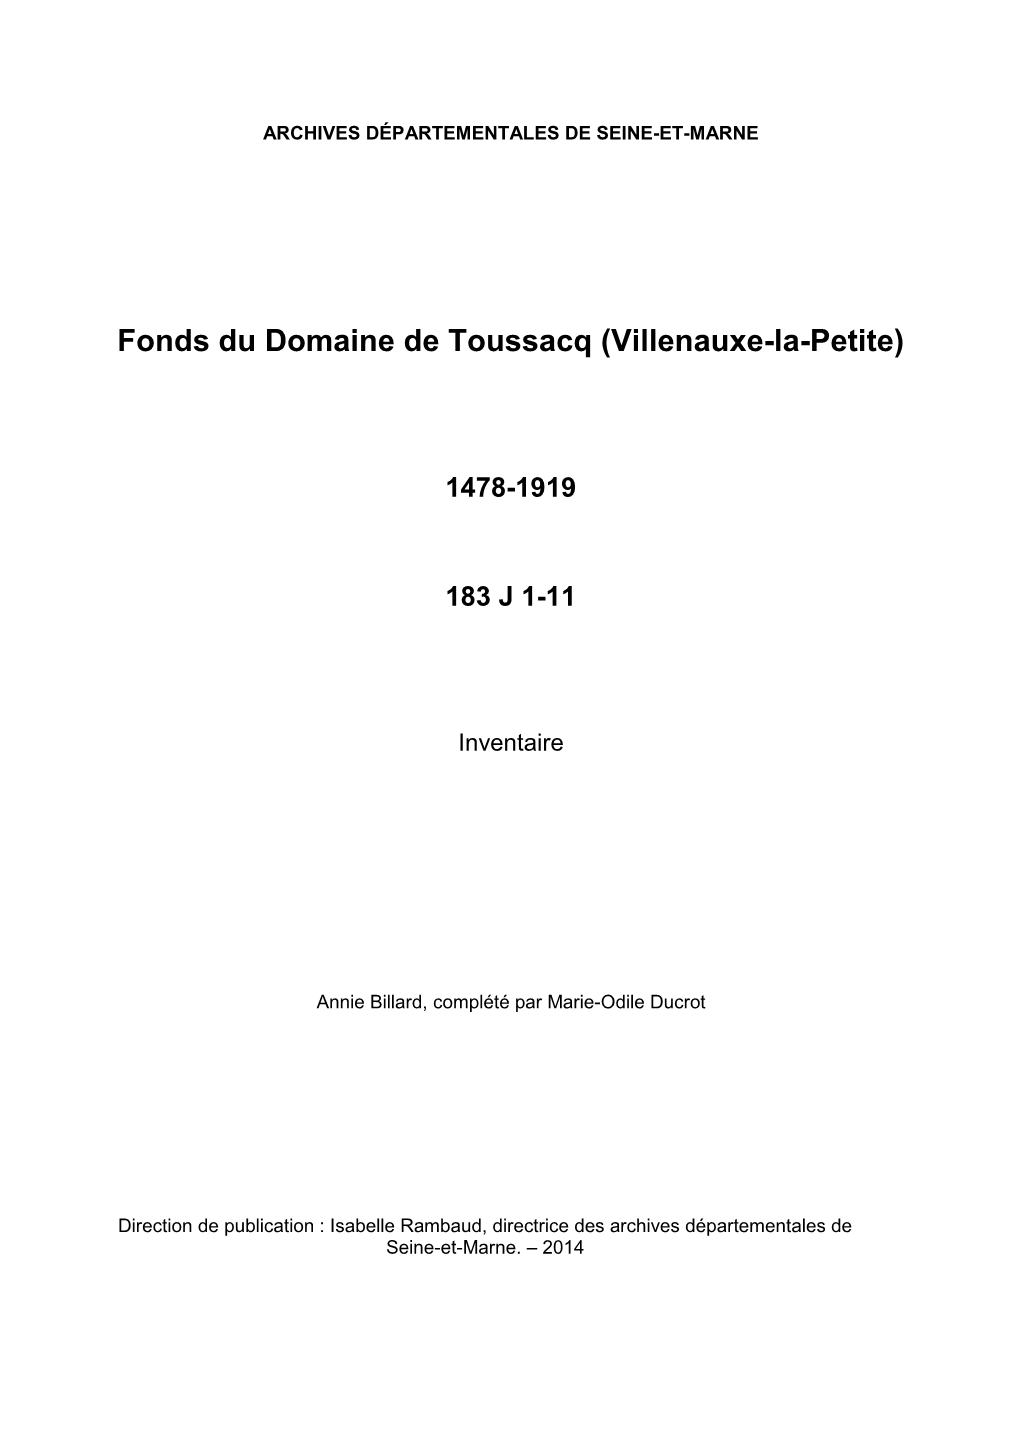 Inventaire Du Fonds Du Domaine De Toussacq (Villenauxe-La-Petite)